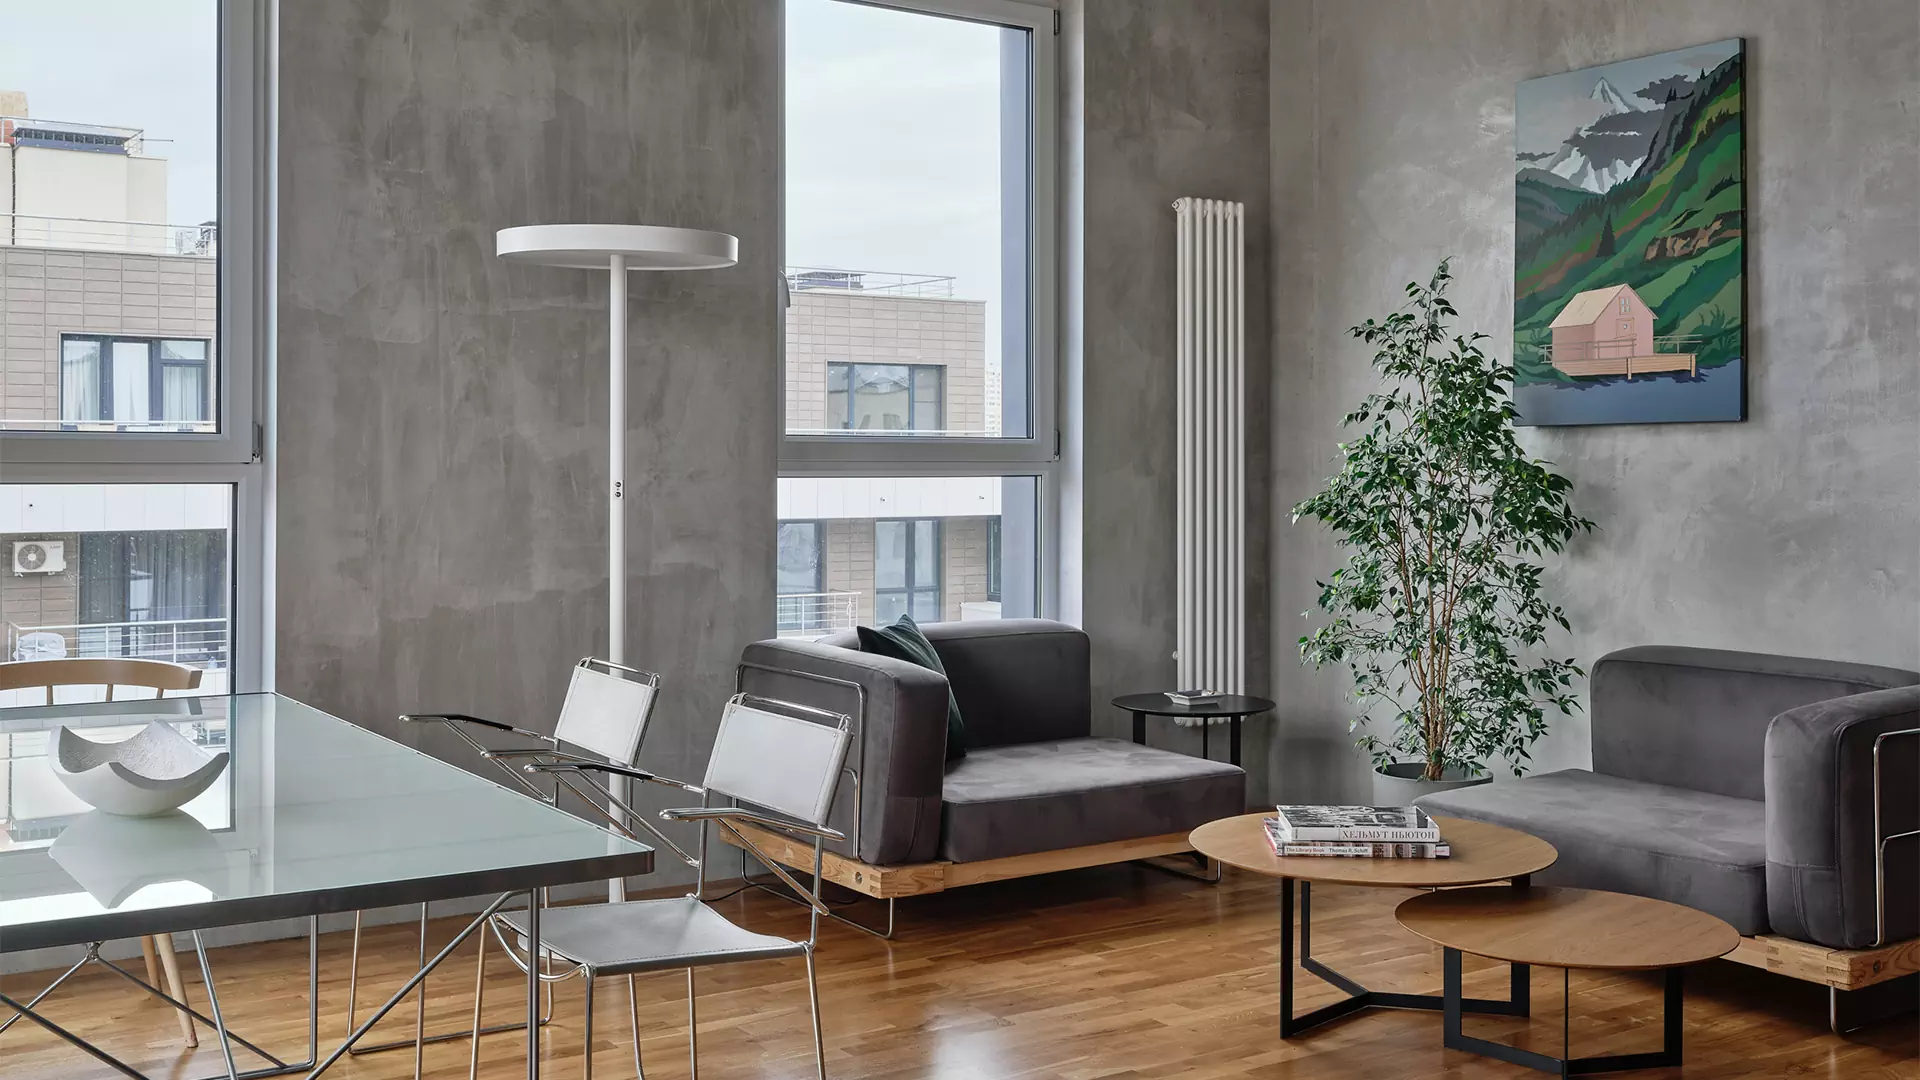 Винтажная мебель и советские светильники в интерьере квартиры для семьи дизайнера — проект Екатерины Герман